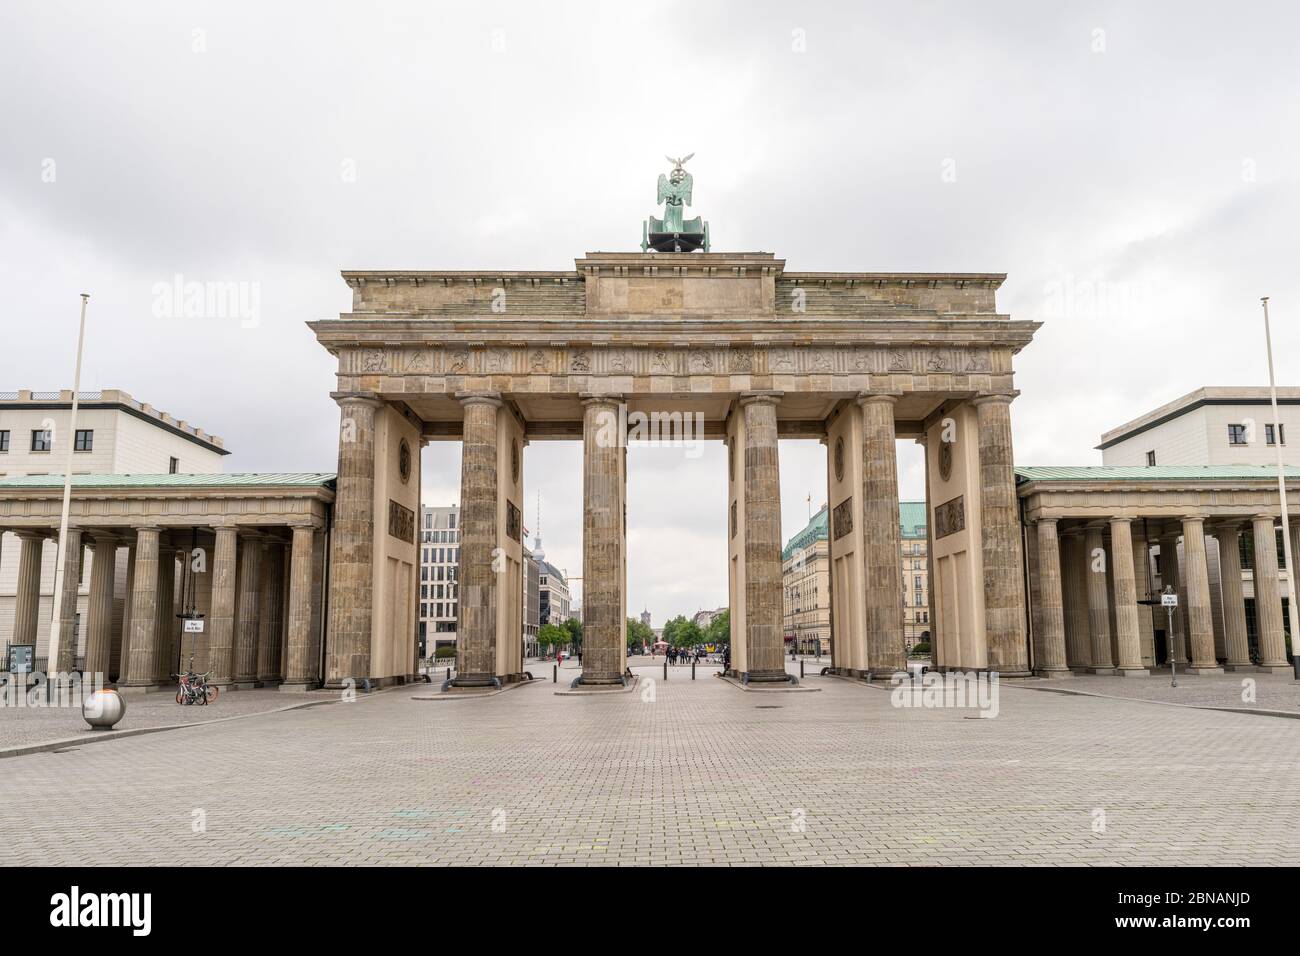 Das historische Brandenburger Tor ist ein Wahrzeichen Berlins, mit dem öffentlichen Raum, der als Platz des 18 bekannt ist. März vor, in Berlin, Deutschland Stockfoto